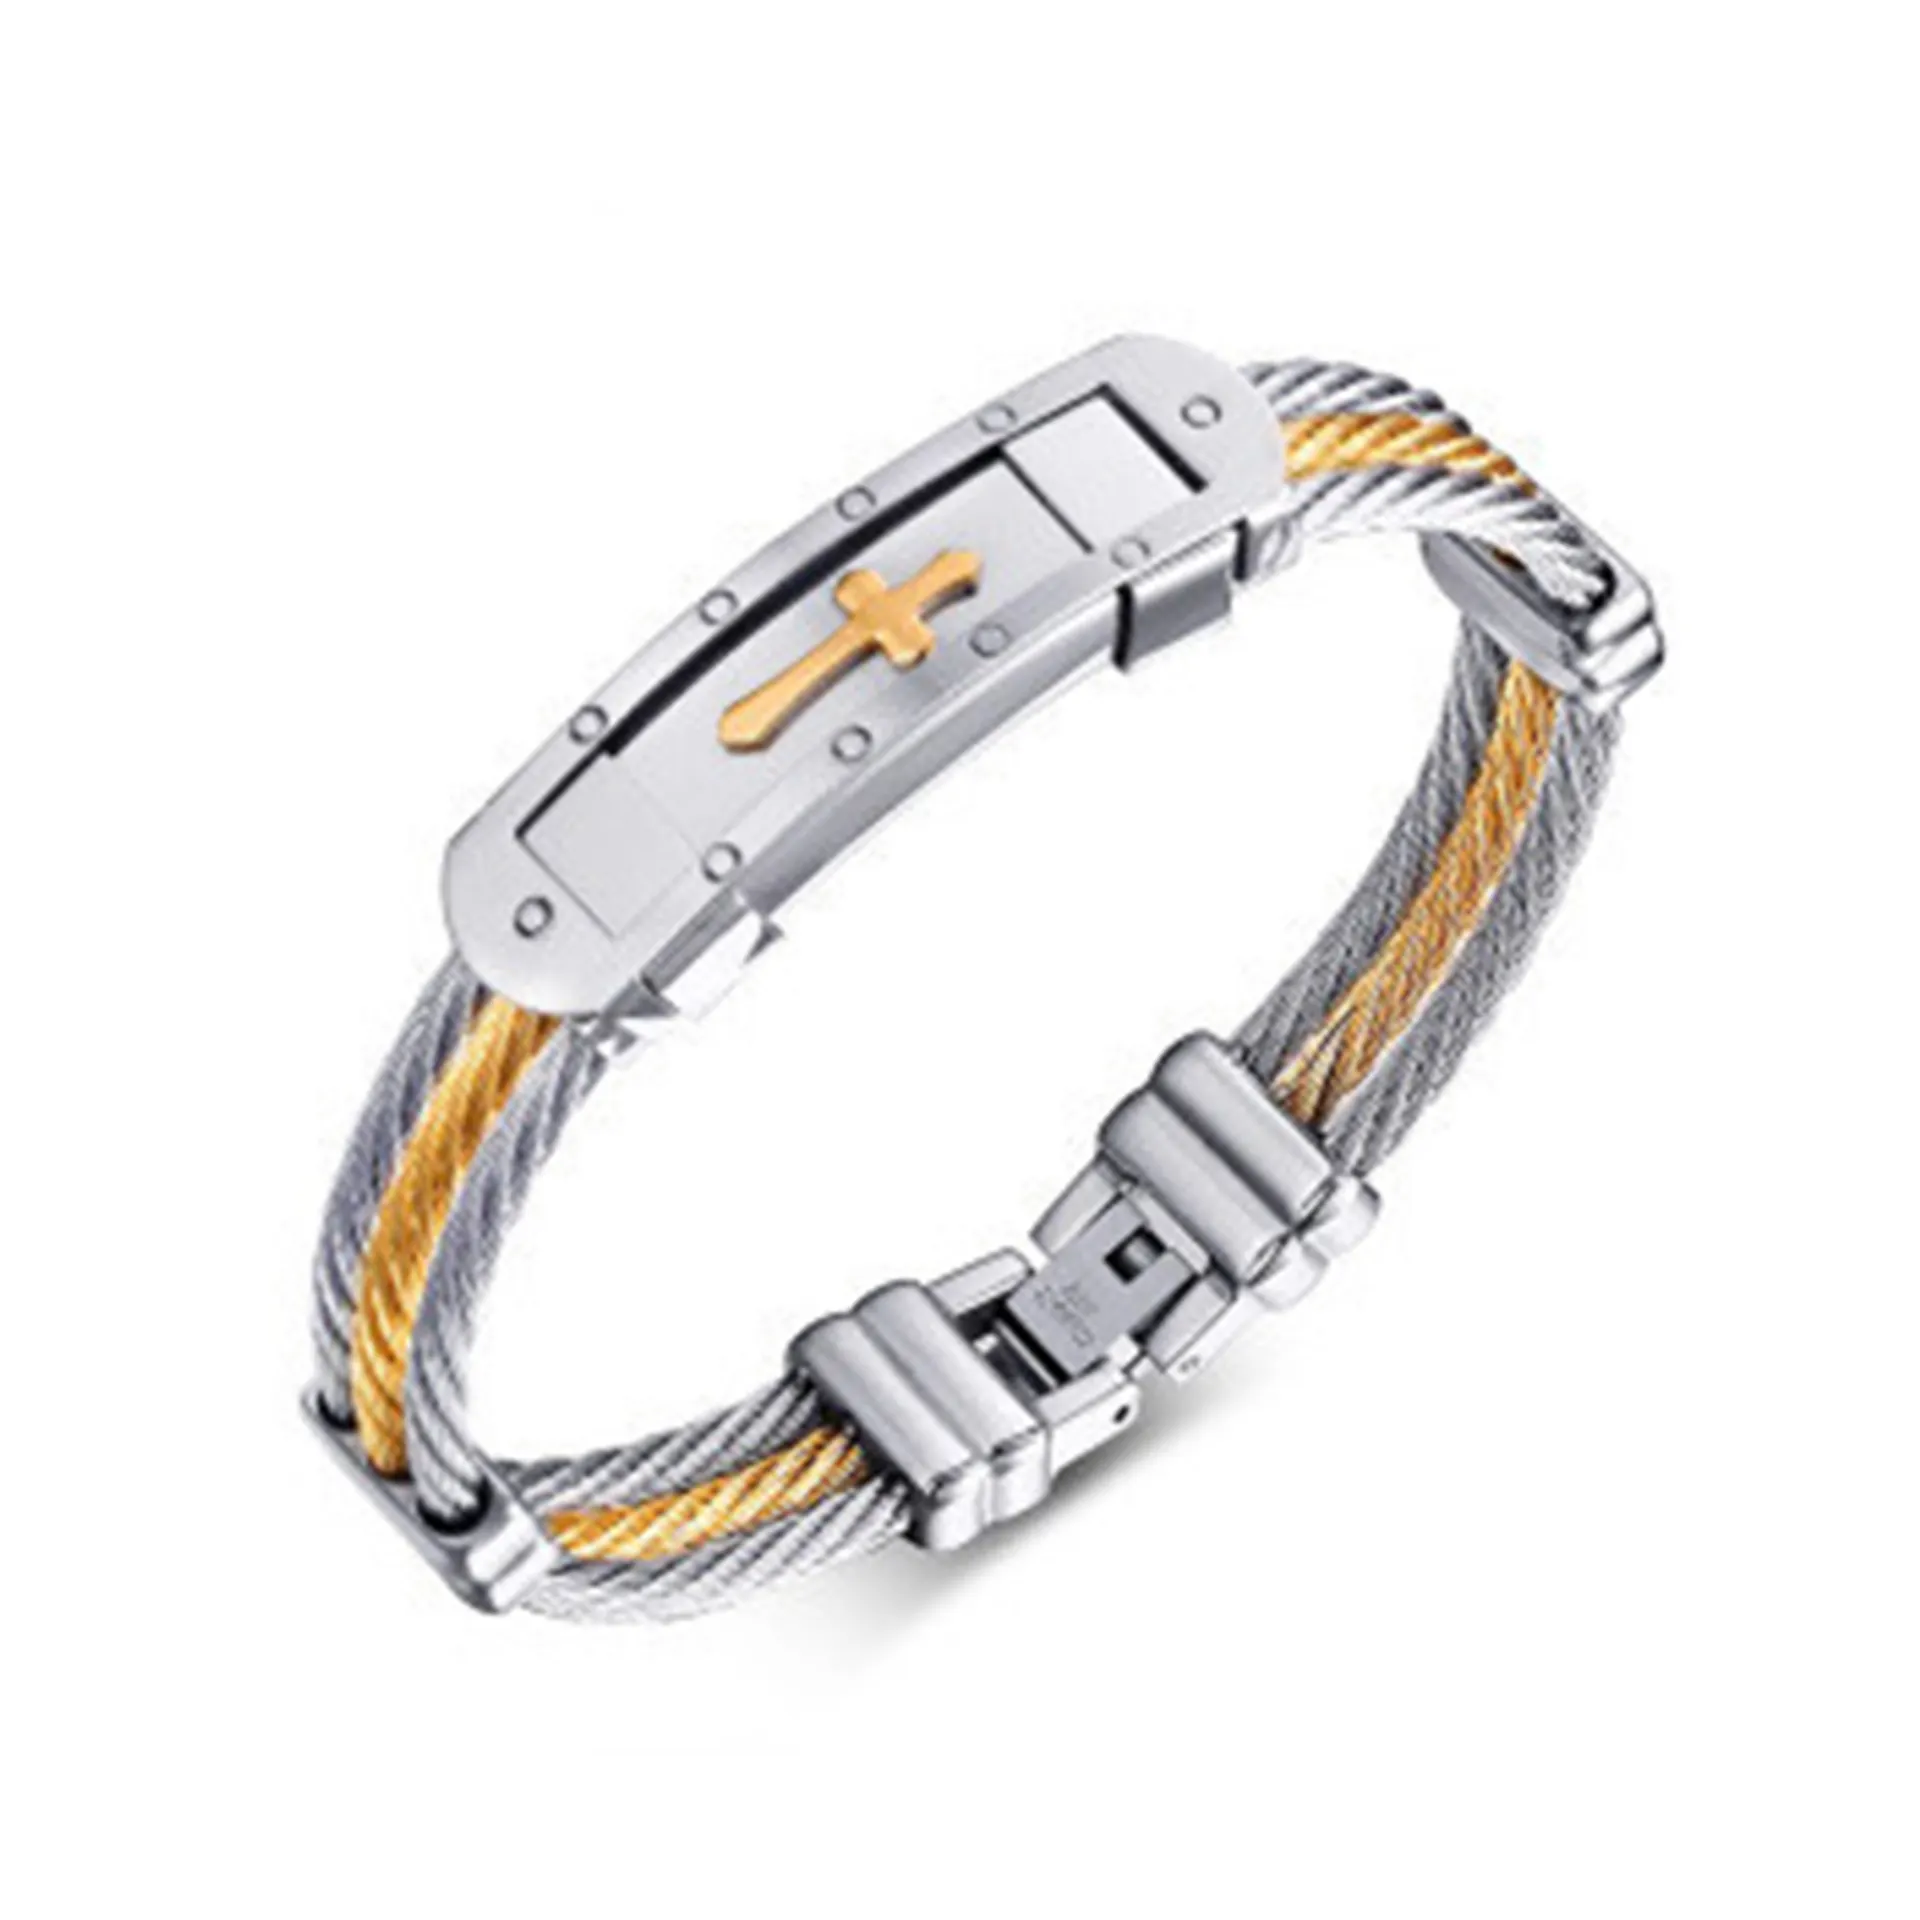 Braccialetti Unisex in acciaio inossidabile regolabili alla moda braccialetti per uomo donna bracciali per uomo e donna